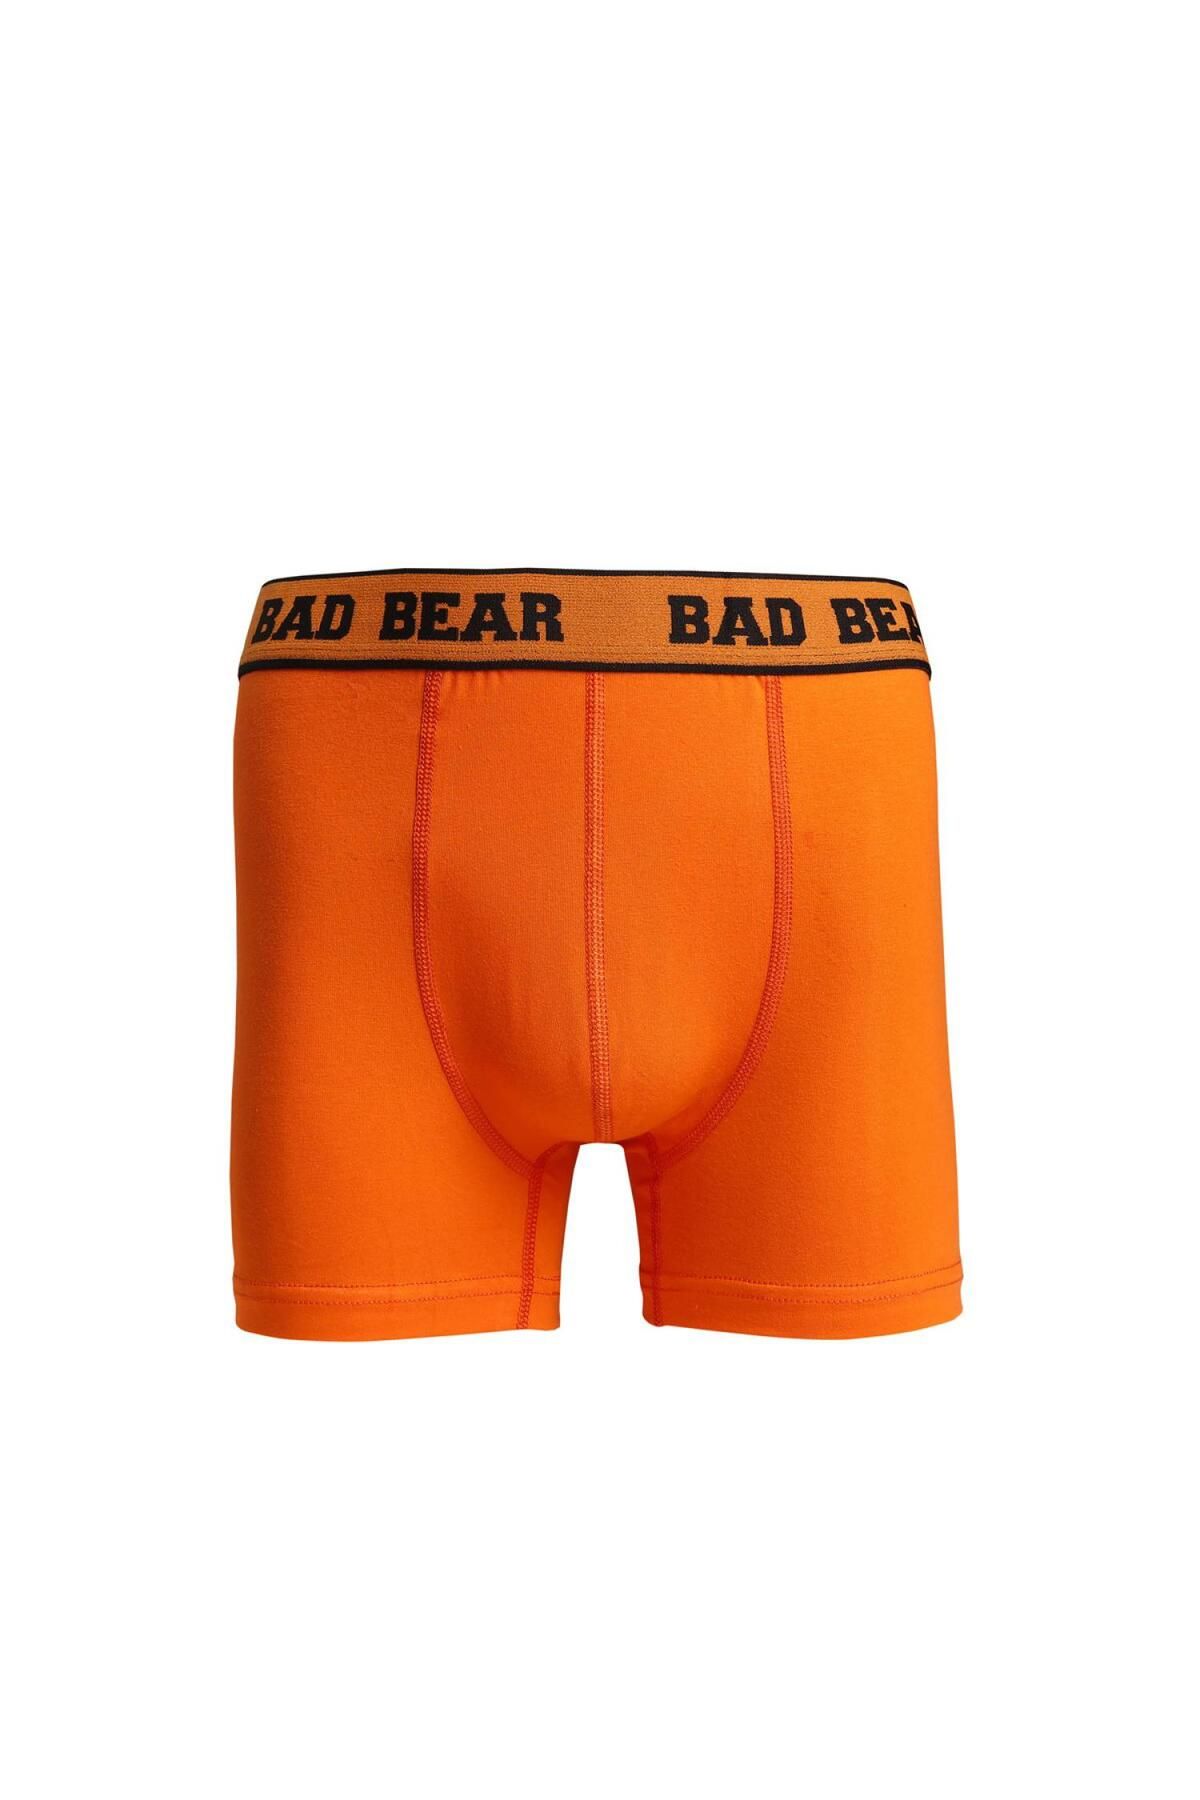 Bad Bear 21.01.03.002 Erkek Basıc Boxer